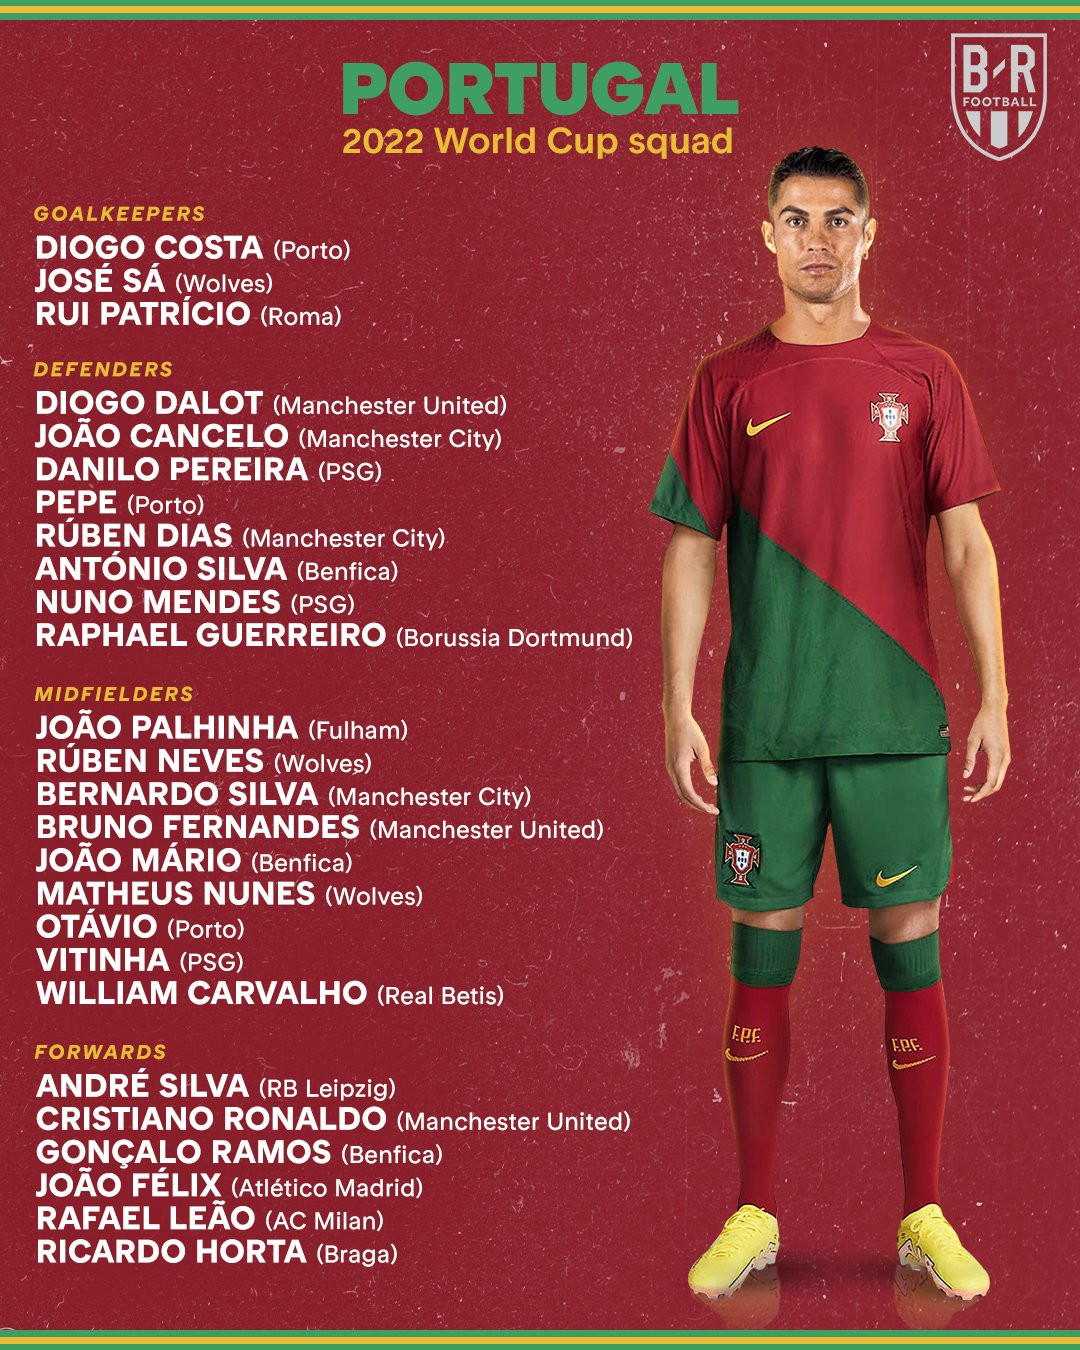 Đội tuyển Bồ Đào Nha World Cup 2022: Đội tuyển Bồ Đào Nha được biết đến là một trong những đội bóng đá hàng đầu thế giới. Trong năm 2022, đội này sẽ tham dự World Cup và sẽ cạnh tranh với các đối thủ lớn như Brazil, Argentina và Đức. Hãy thưởng thức bức ảnh của đội tuyển Bồ Đào Nha và cùng họ chiến đấu để giành chiến thắng trong giải đấu lớn này.